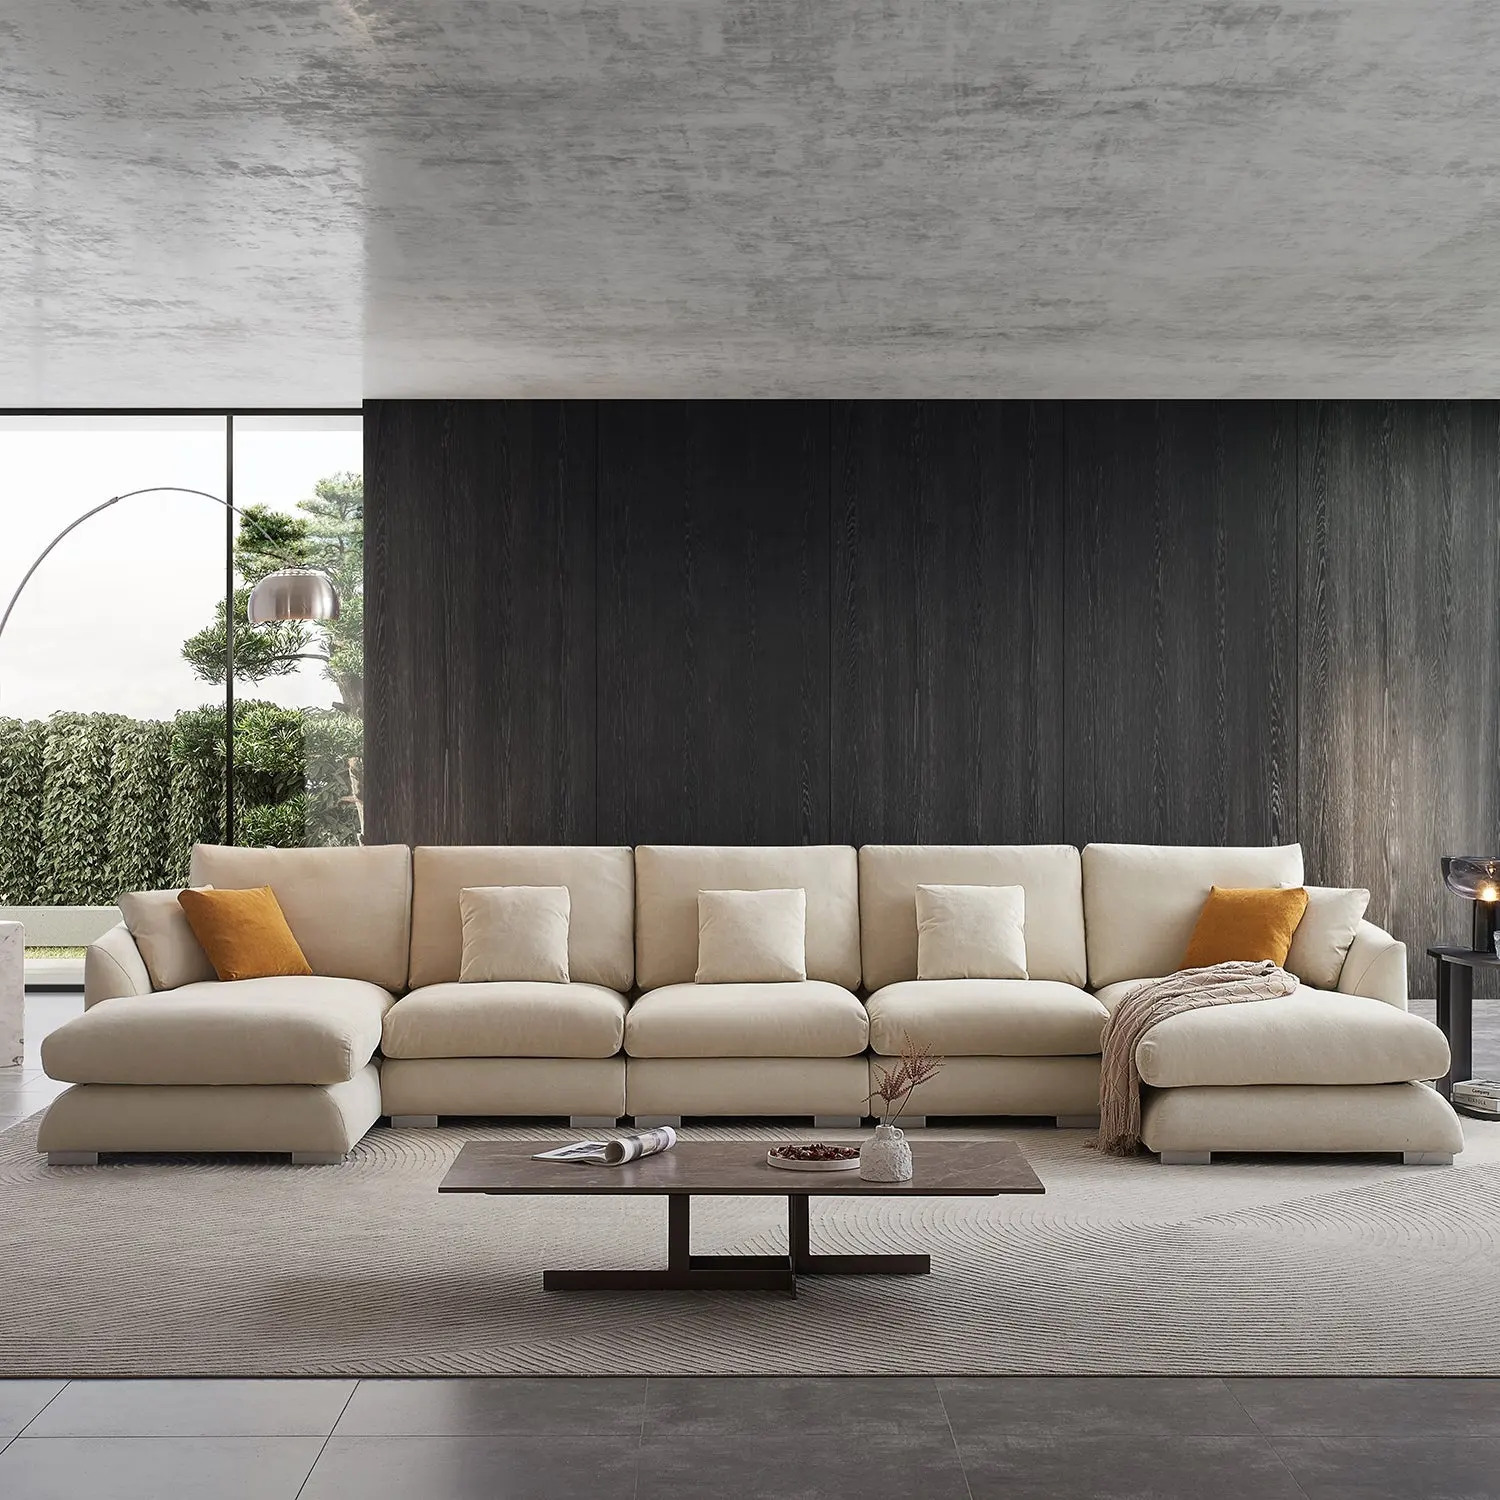 Italienisches Design Möbel U-Form Couch Wohnzimmer Ecke Sofas Stoff Modular Sectional Chaise Sofa